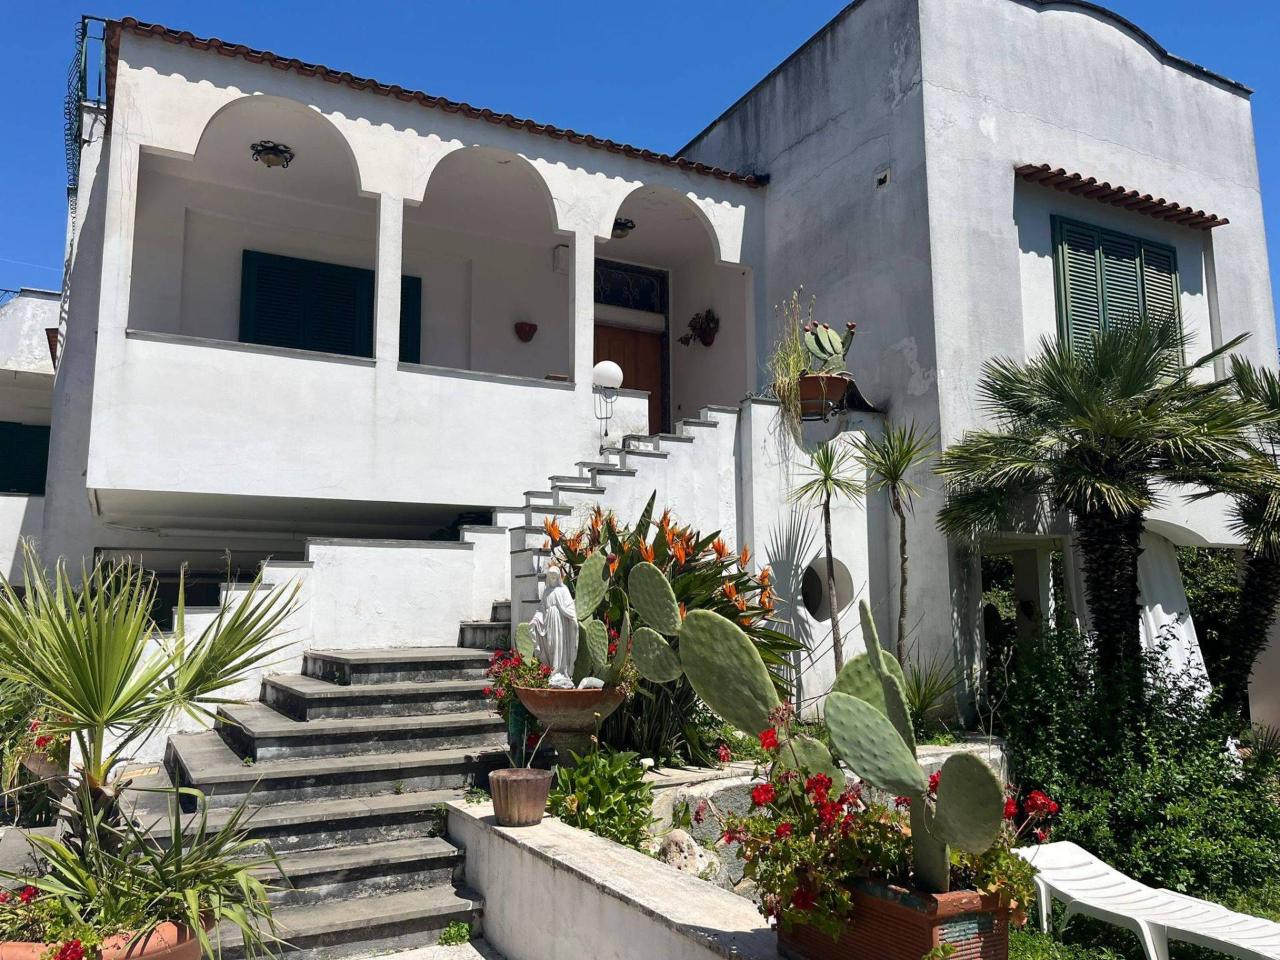 Villa in vendita a Scafati